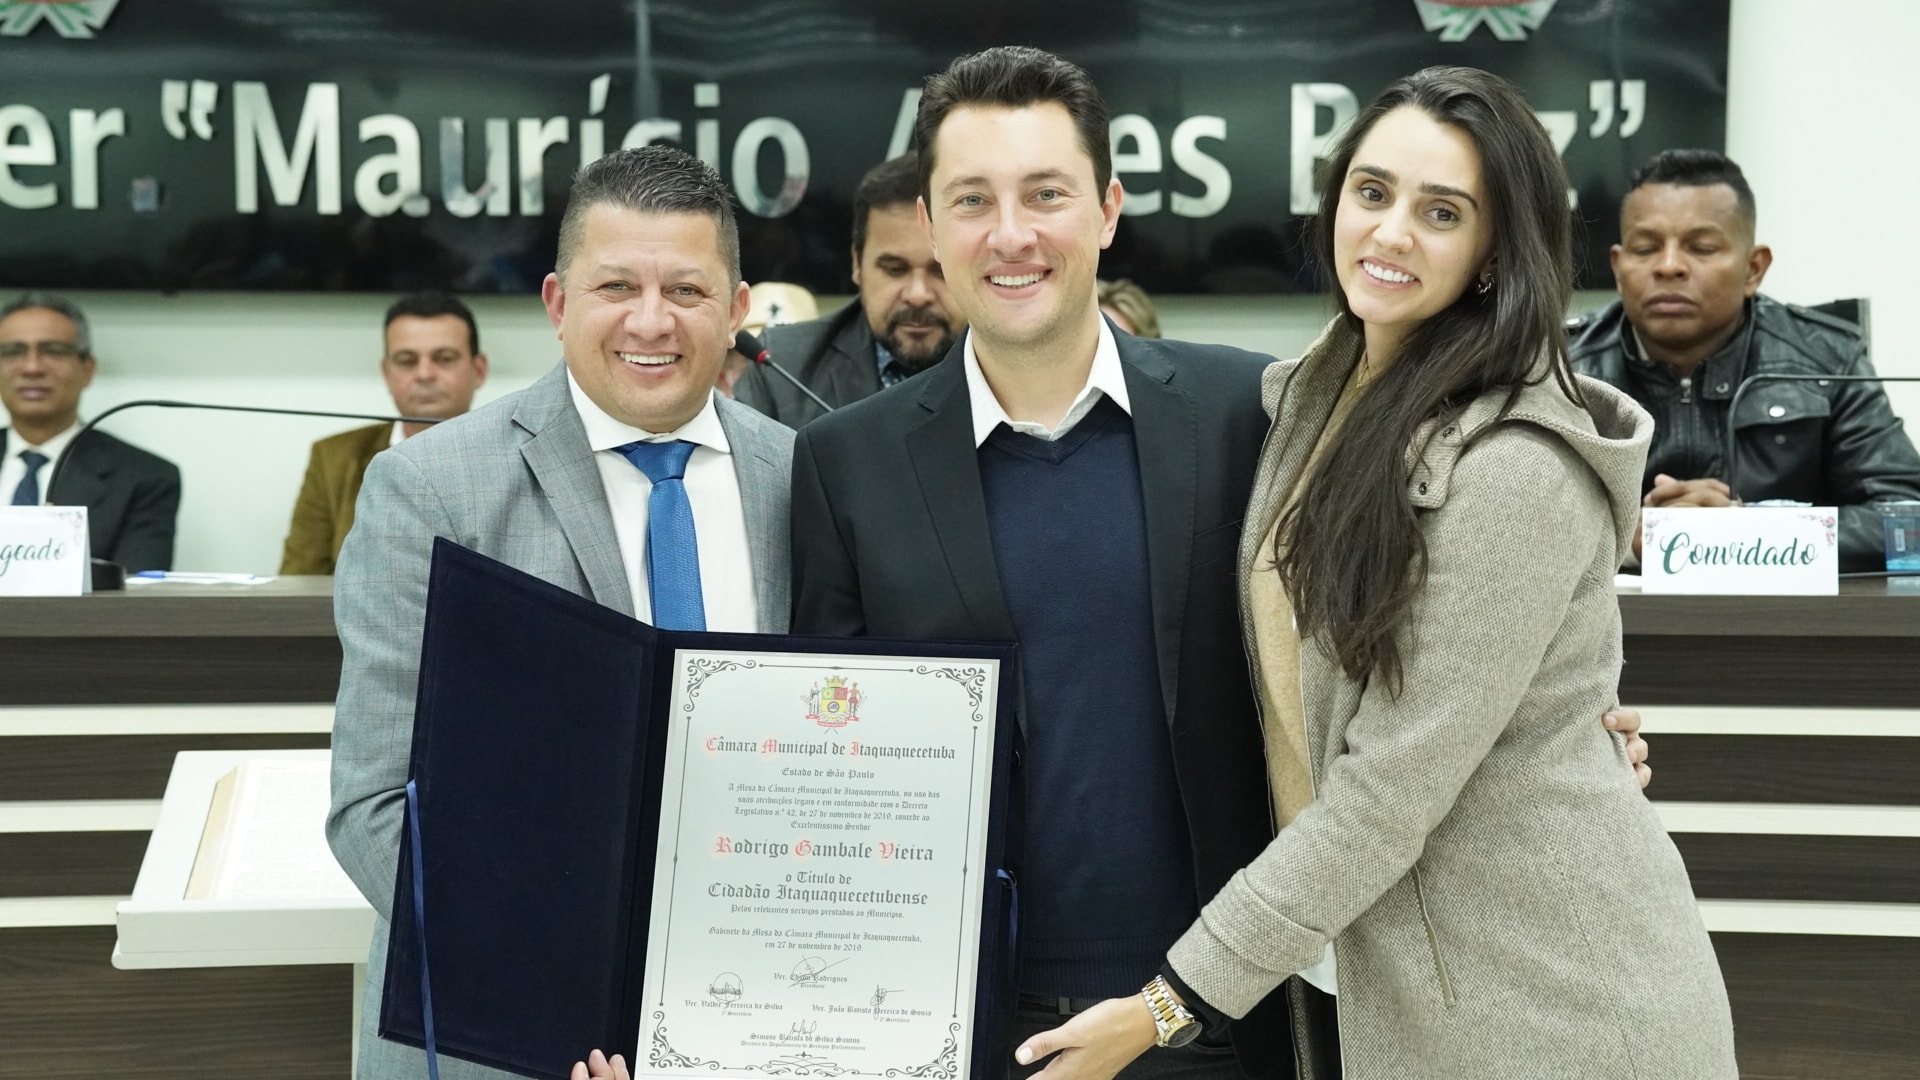 Deputado Rodrigo Gambale recebe título de "Cidadão Itaquaquecetubense" por conquistas para a causa animal  